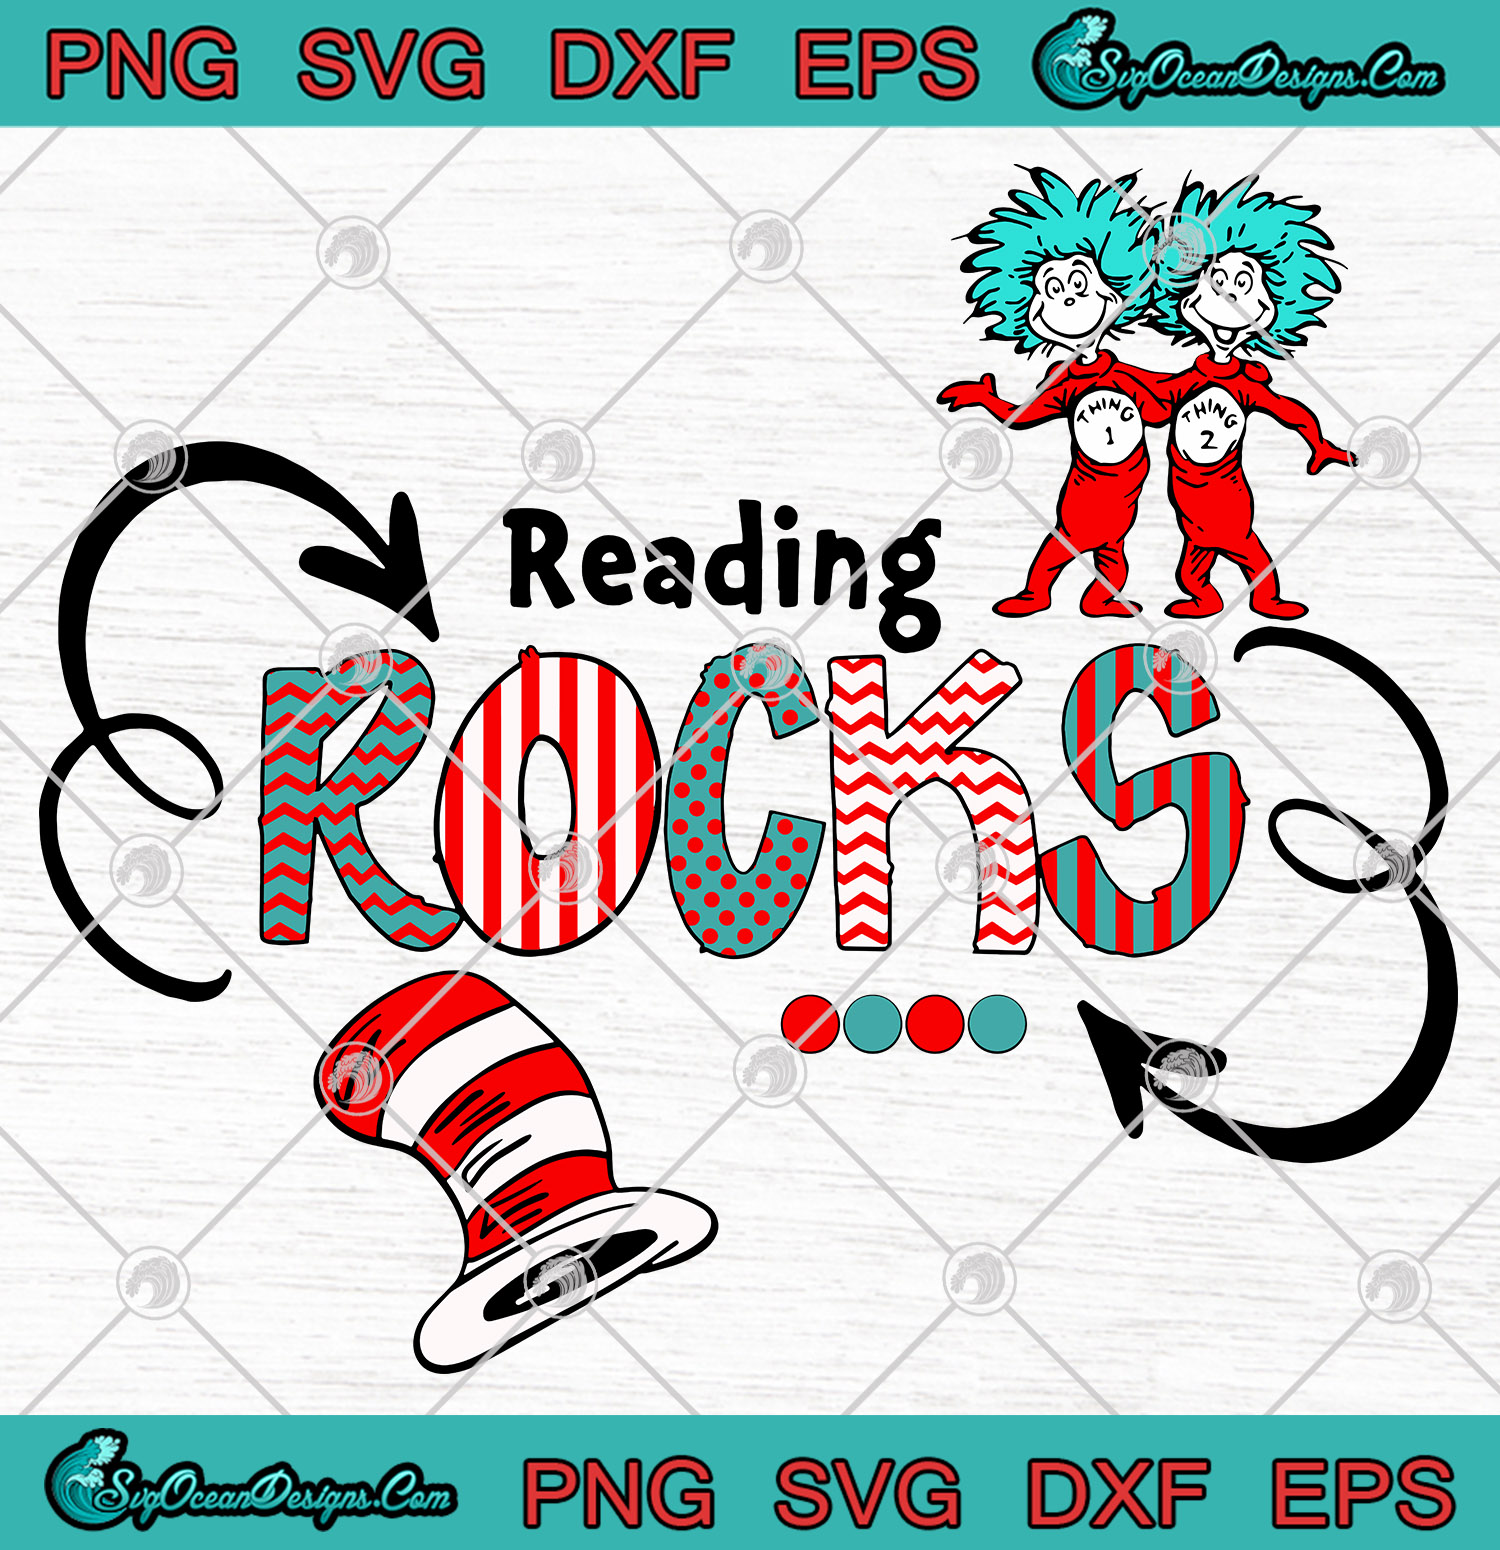 Download Dr Seuss Reading Rocks SVG PNG EPS DXF,Dr Seuss Cat hat Art Vector - Designs Digital Download